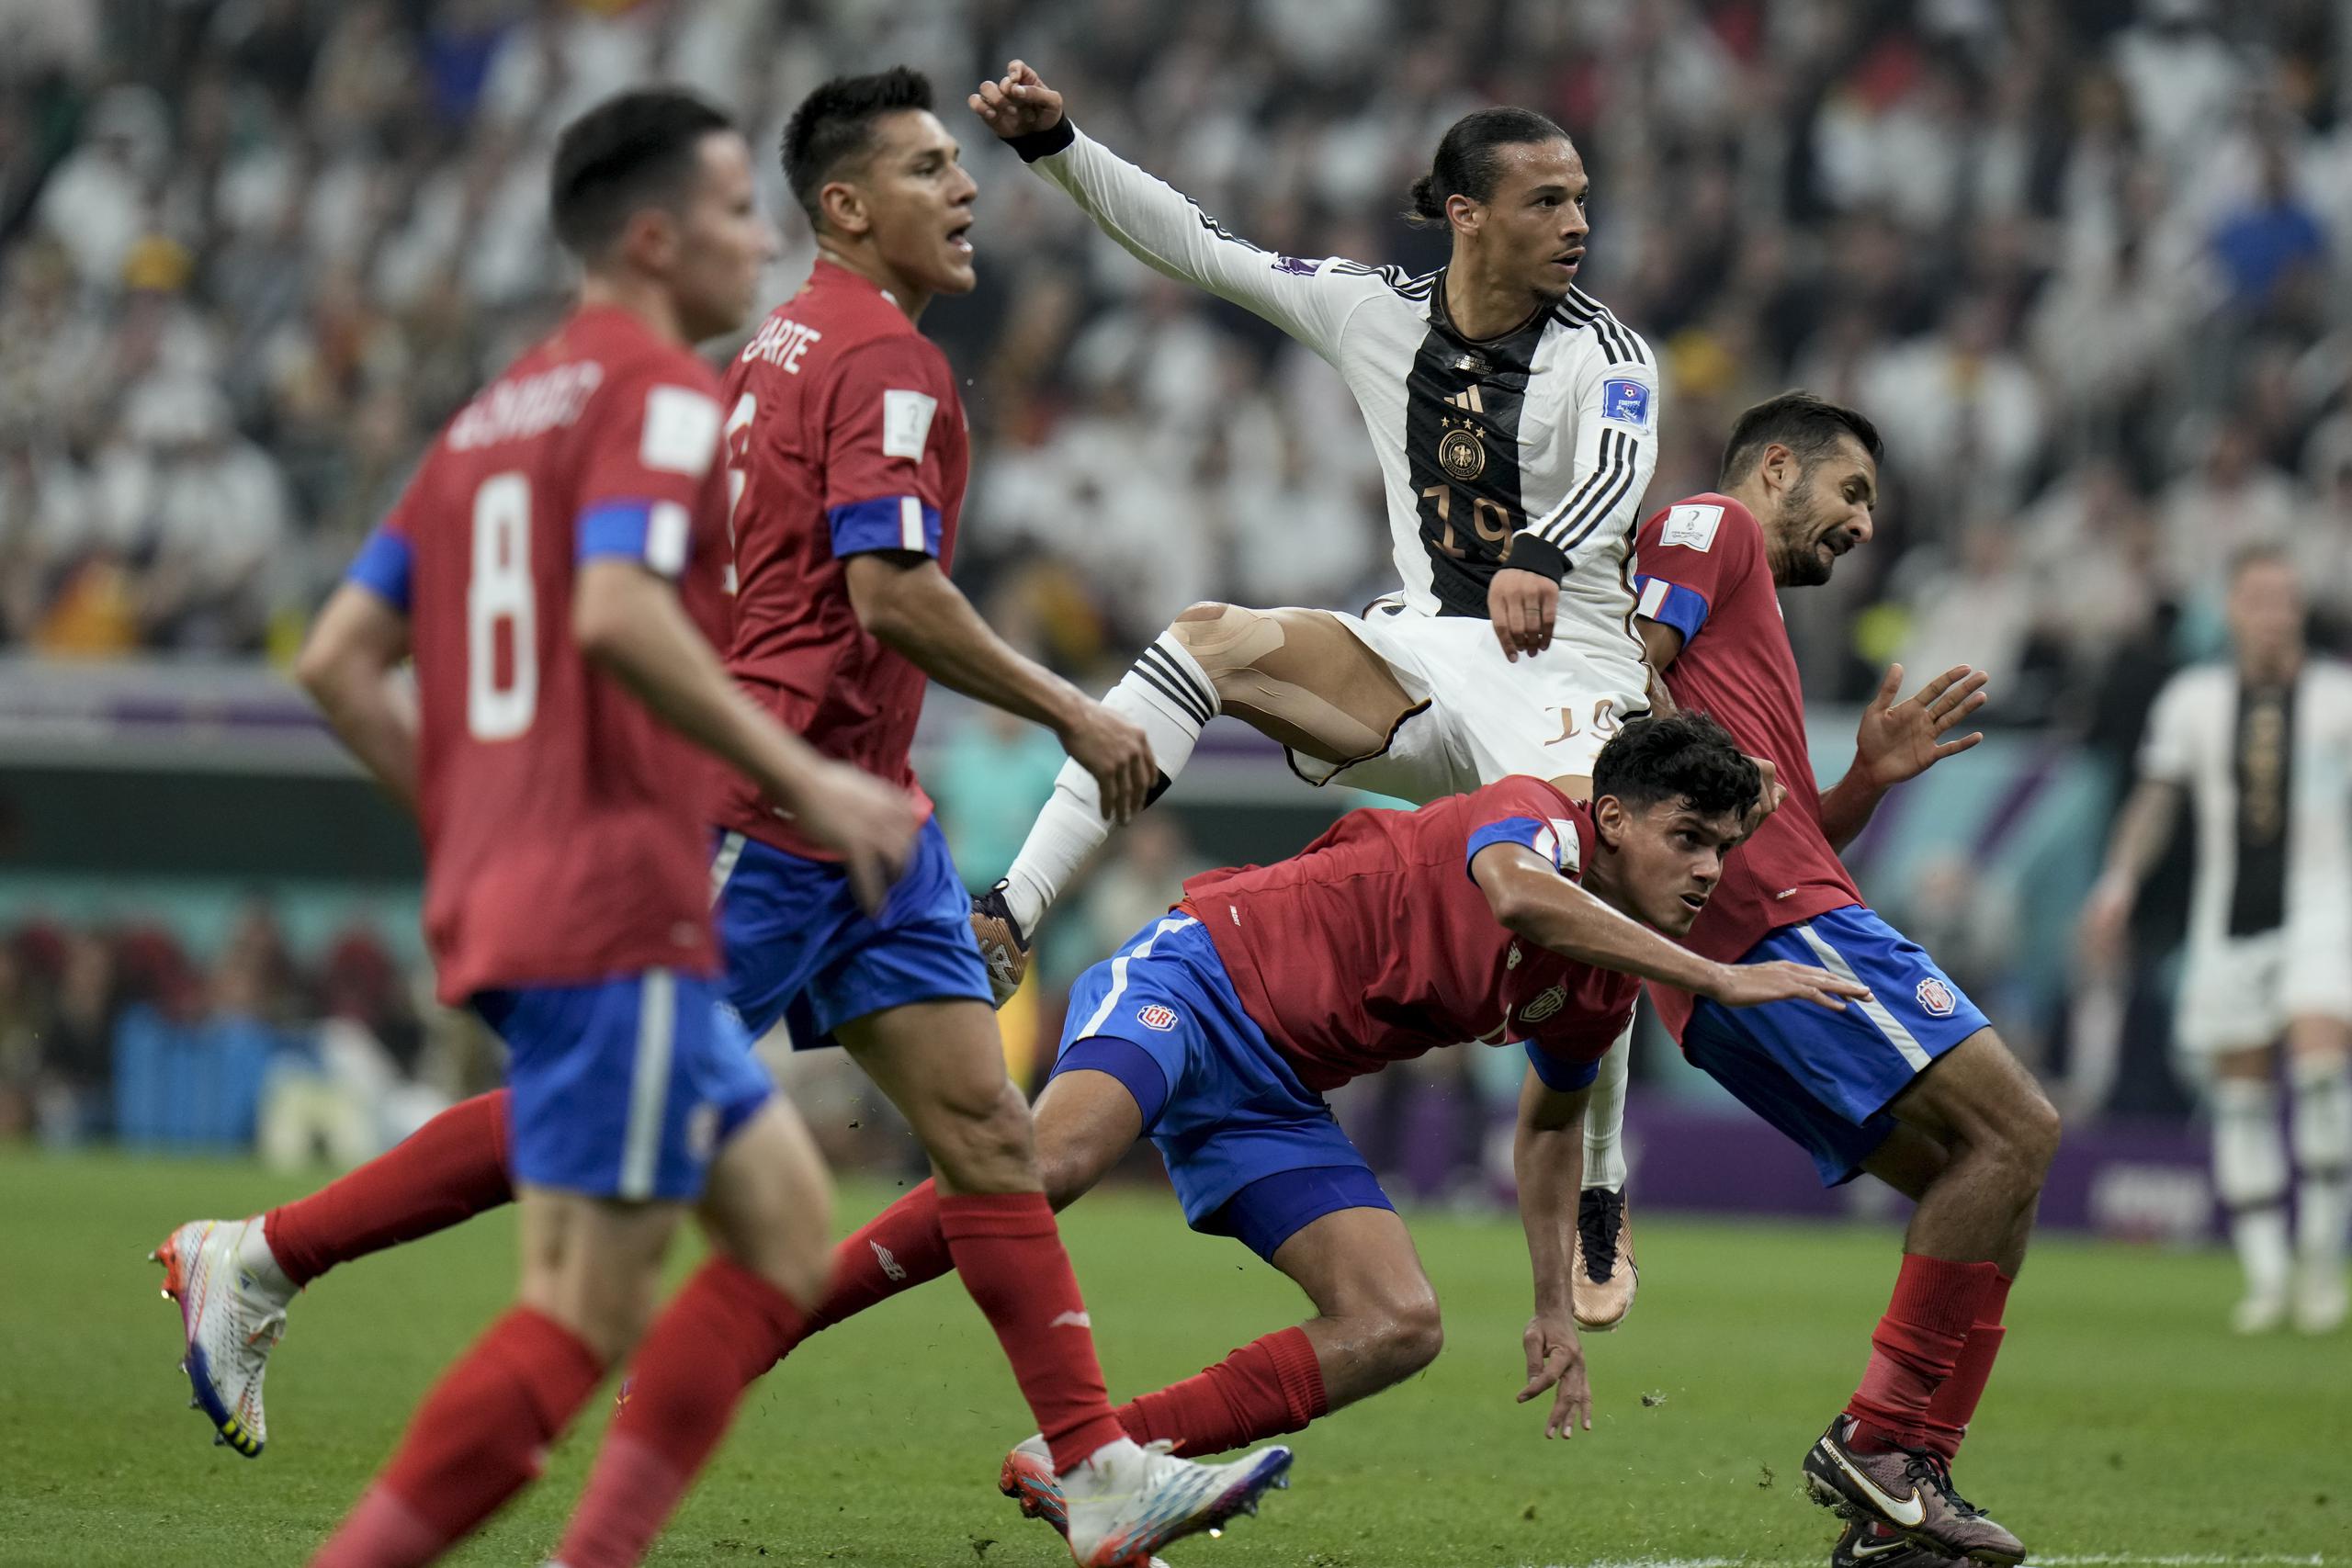 El alemán Leroy Sane, de 19 años, intenta un ataque durante el partido contra Costa Rica por el Grupo E de la Copa Mundial en el Estadio Al Bayt en Jor, Qatar.